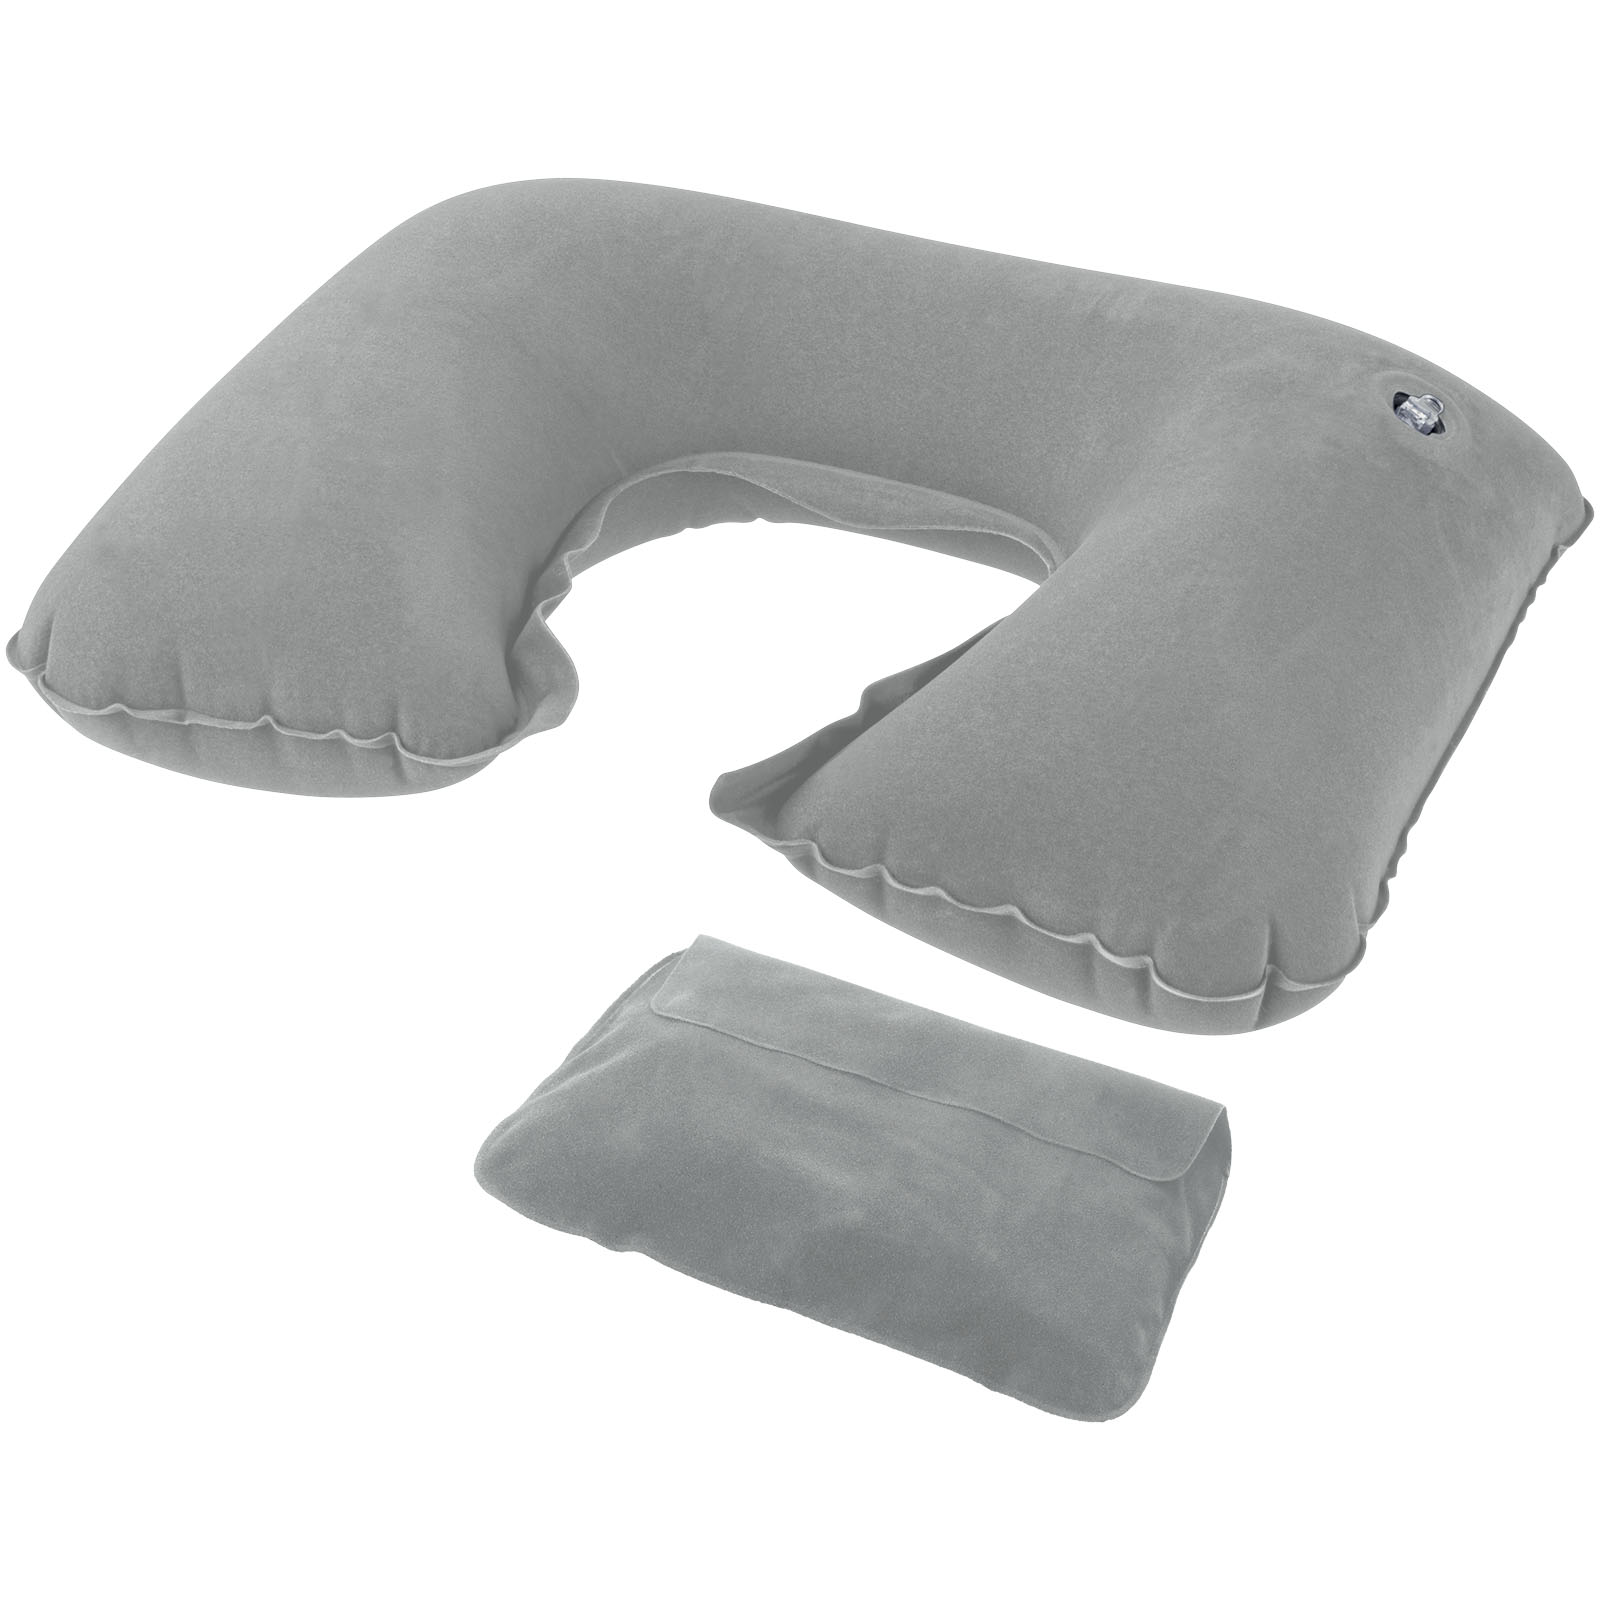 Mart ondergoed manager Detroit inflatable pillow – Ellington e-shop